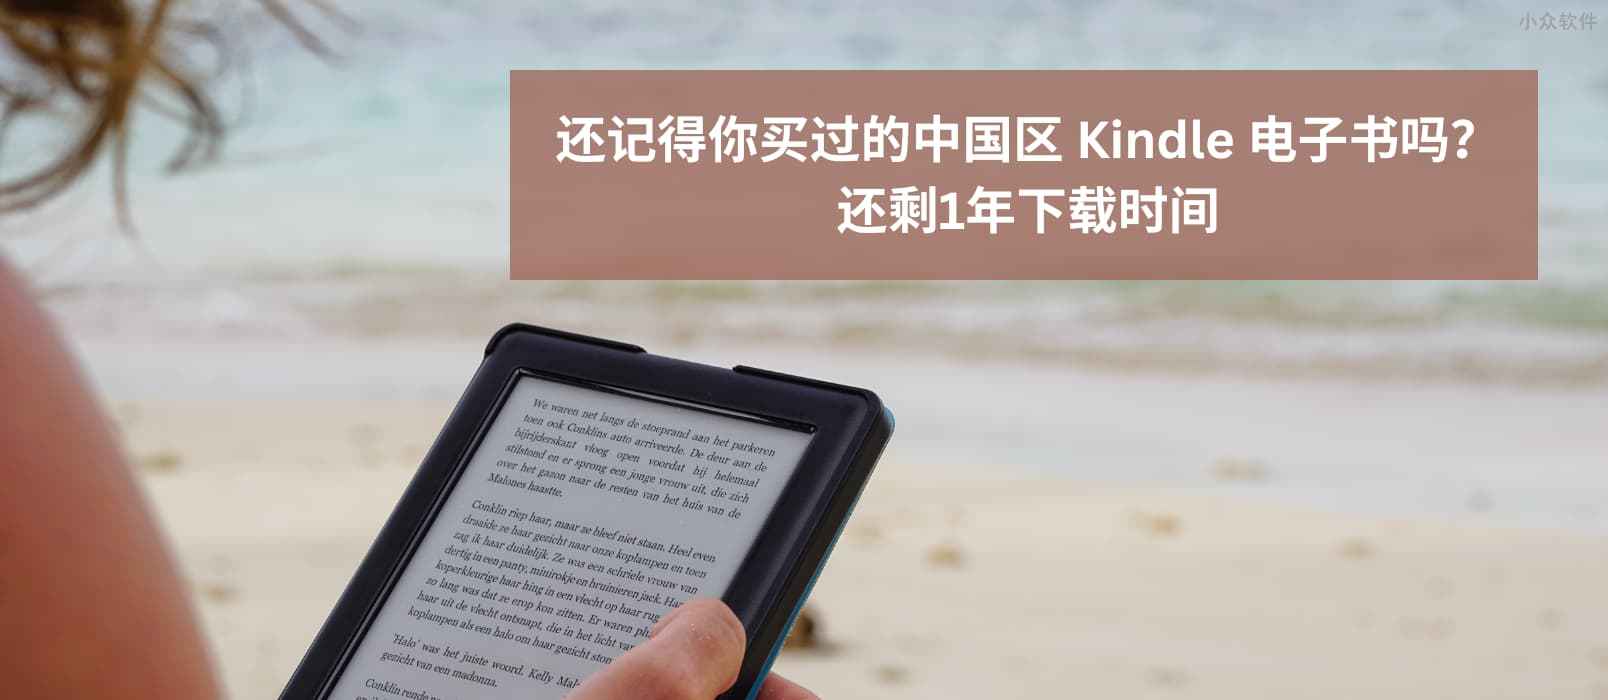 Kindle 中国电子书点停止服务还剩 1 年，是时候去下载那些买过的Kindle 中国区电子书了